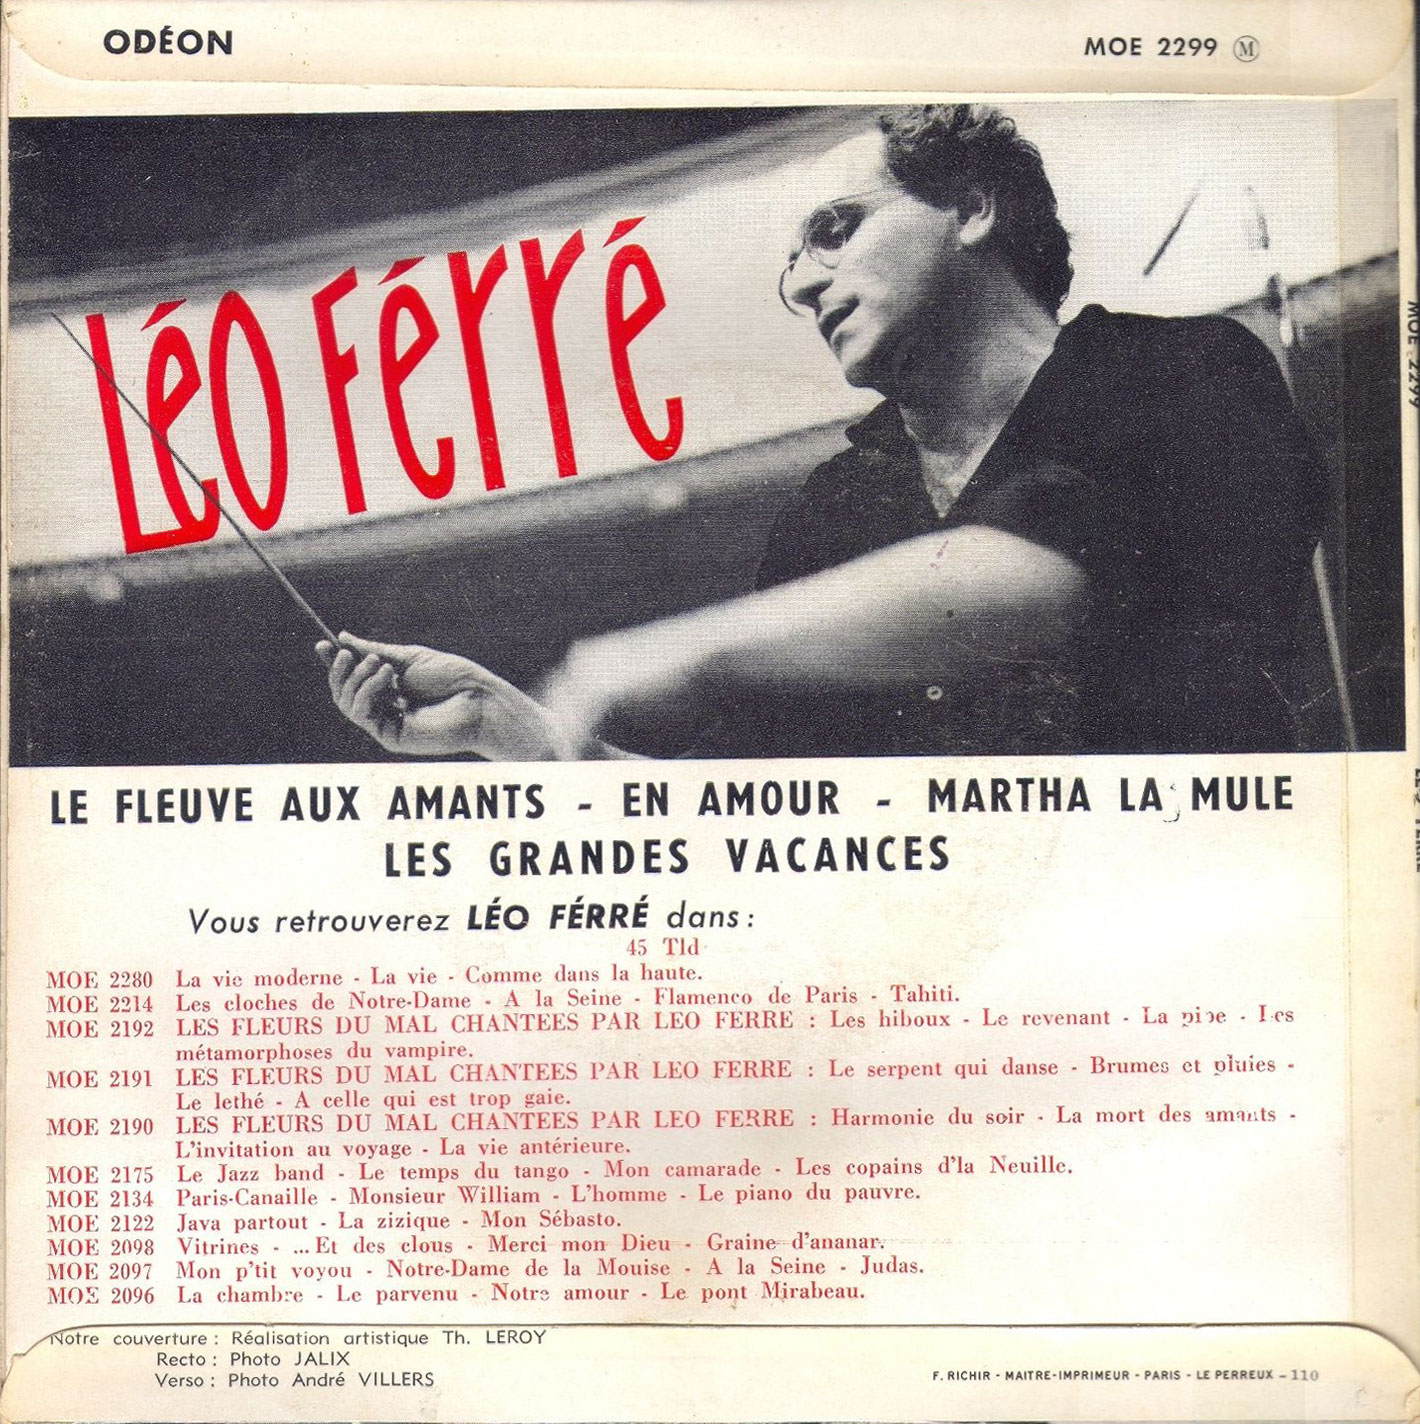 Léo Ferré - Odeon-MOE-2299